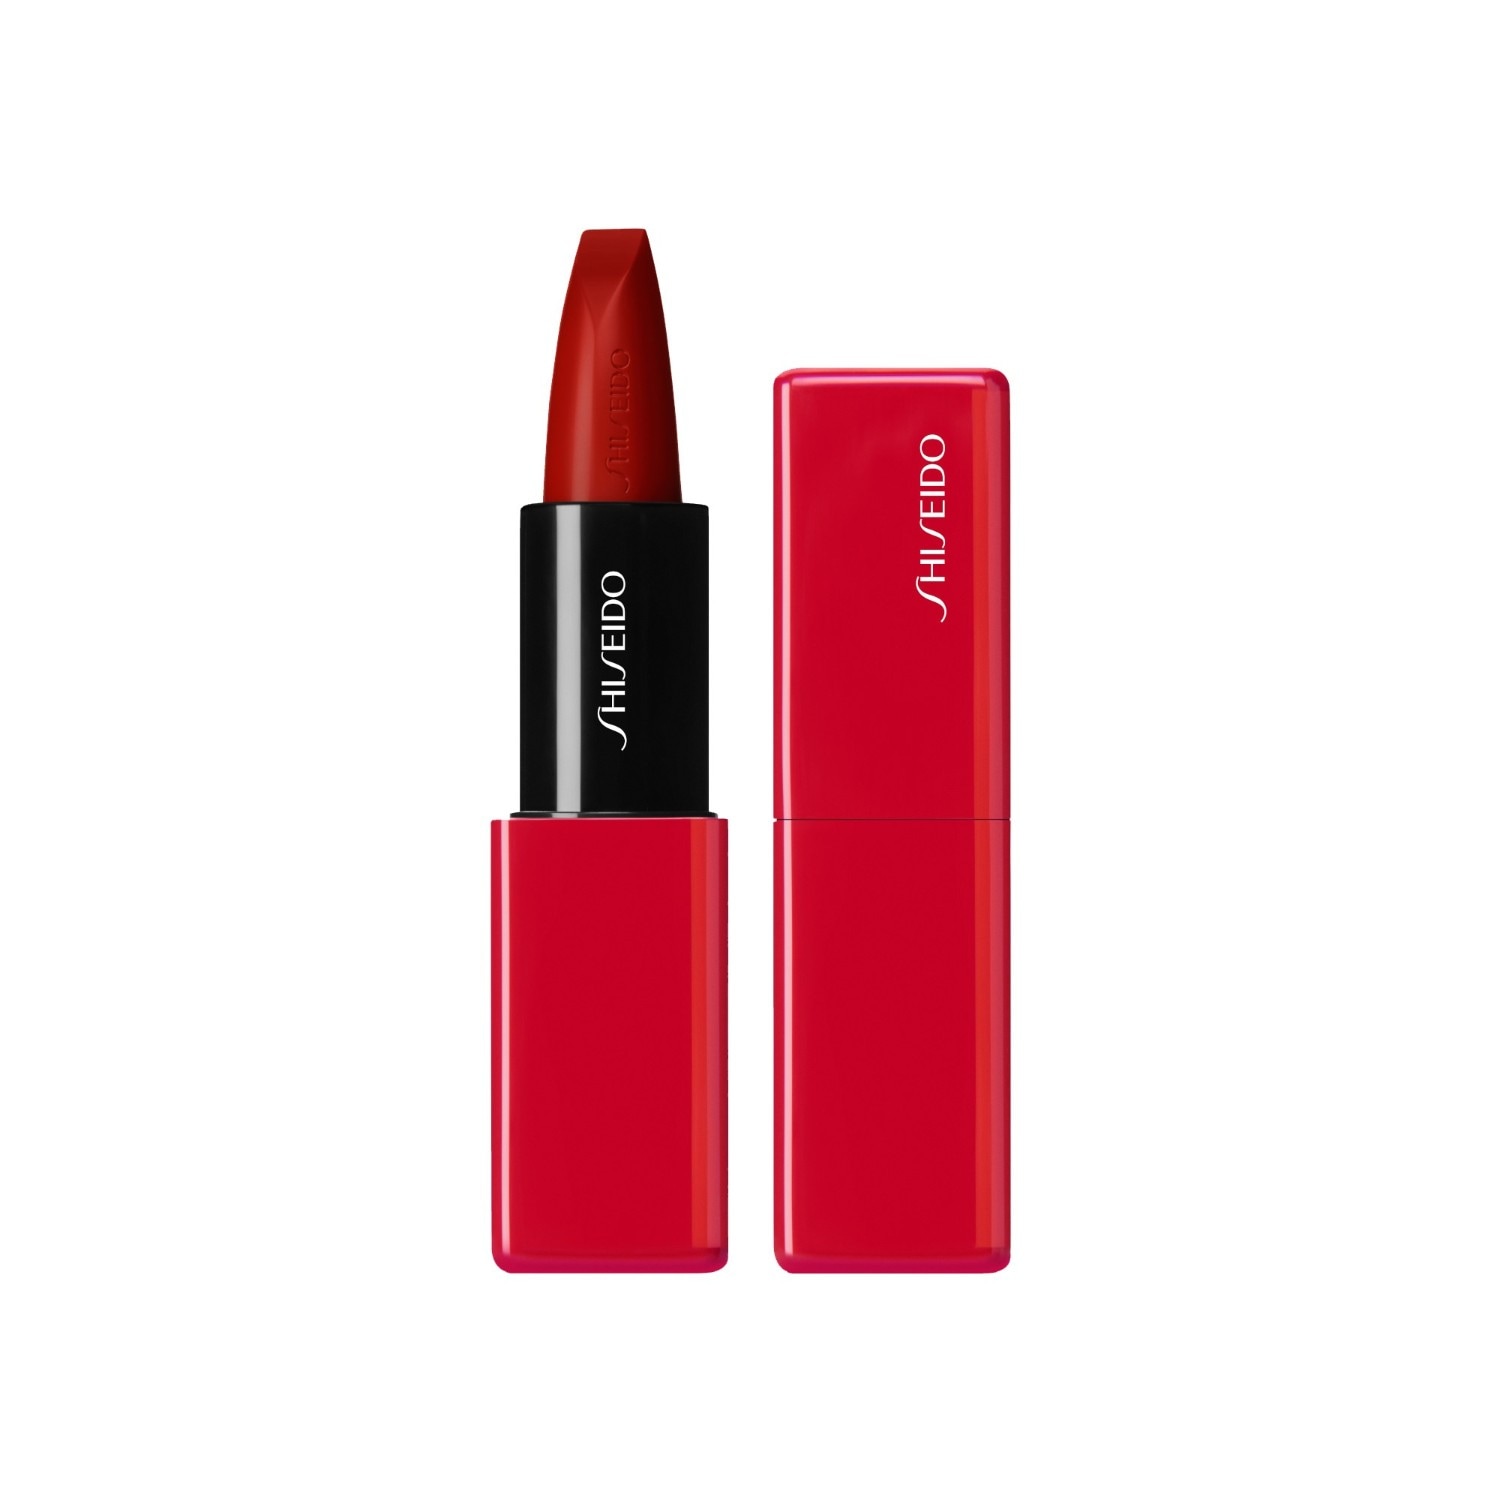 Shiseido TechnoSatin Gel Lipstick 402, Main Frame 413